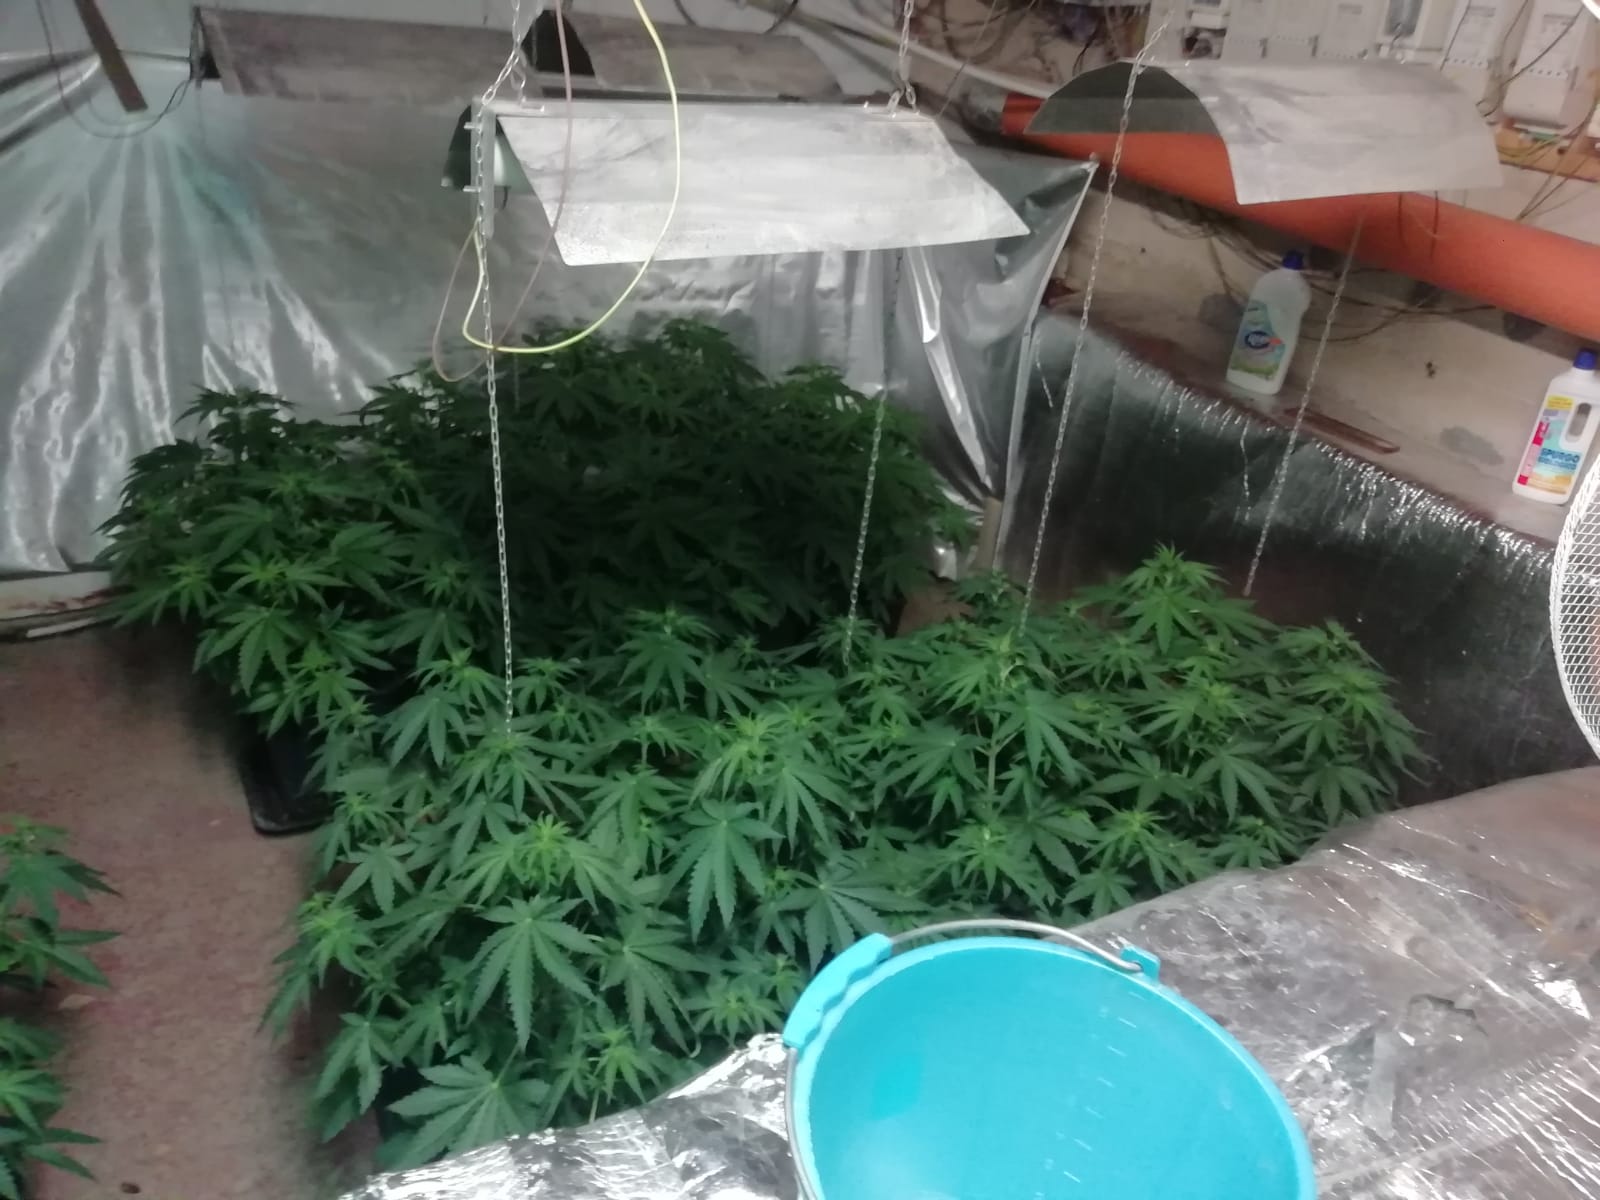 Marijuana in un cunicolo, carabinieri scoprono piantagione